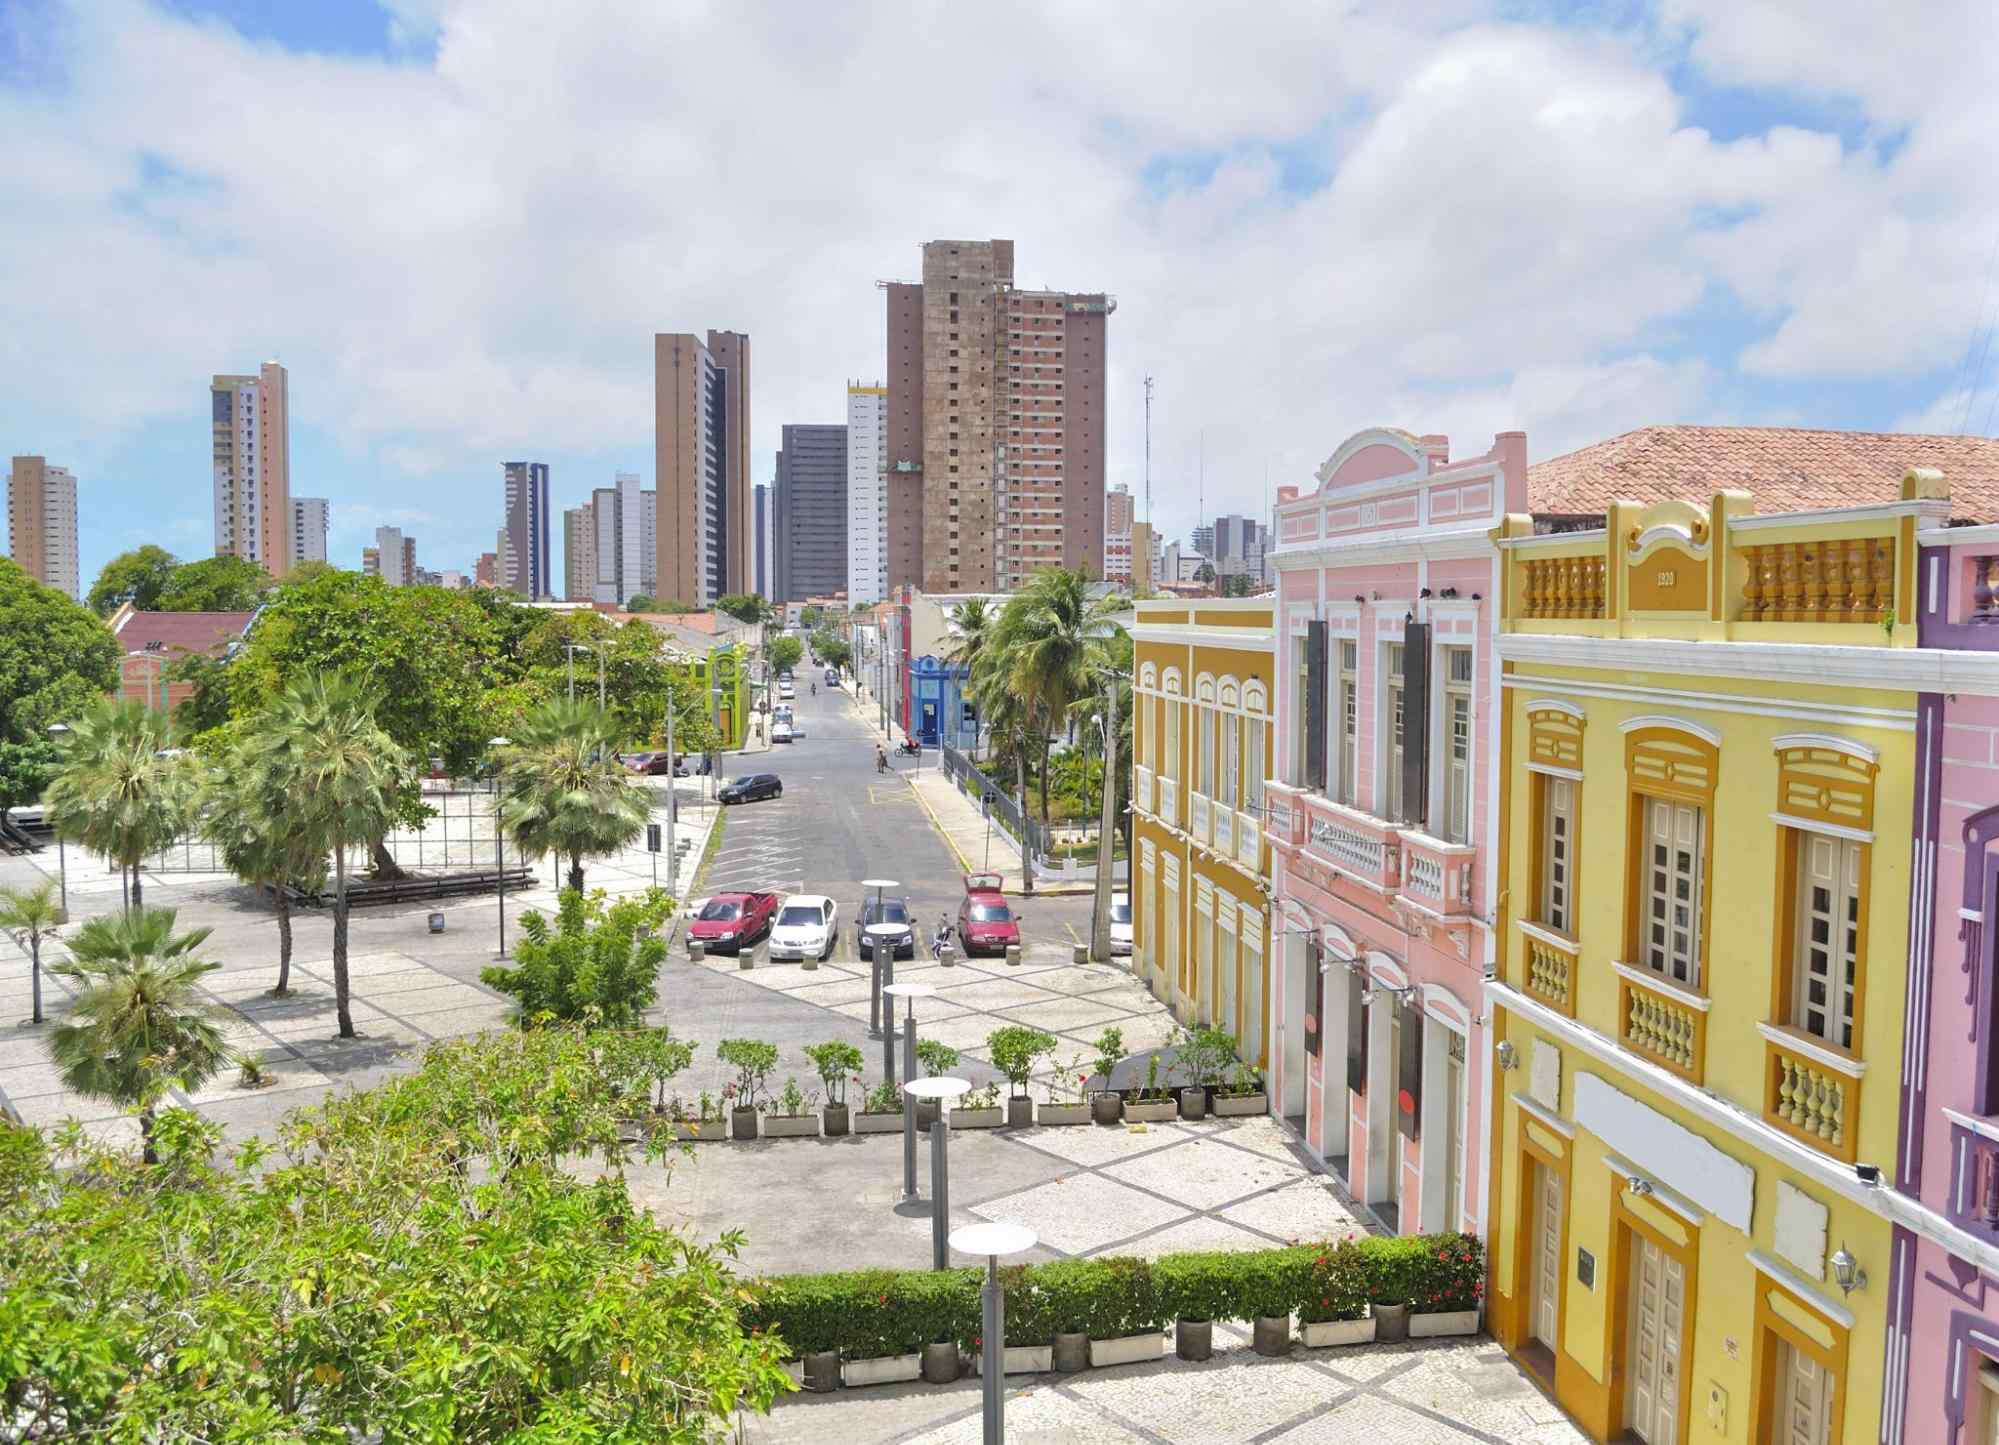 Vista aérea mostrando parte lateral do centro de Fortaleza, com as casas coloridas que formam o Centro Cultural Dragão do Mar. Prédios e alguns carros aparecem ao fundo.